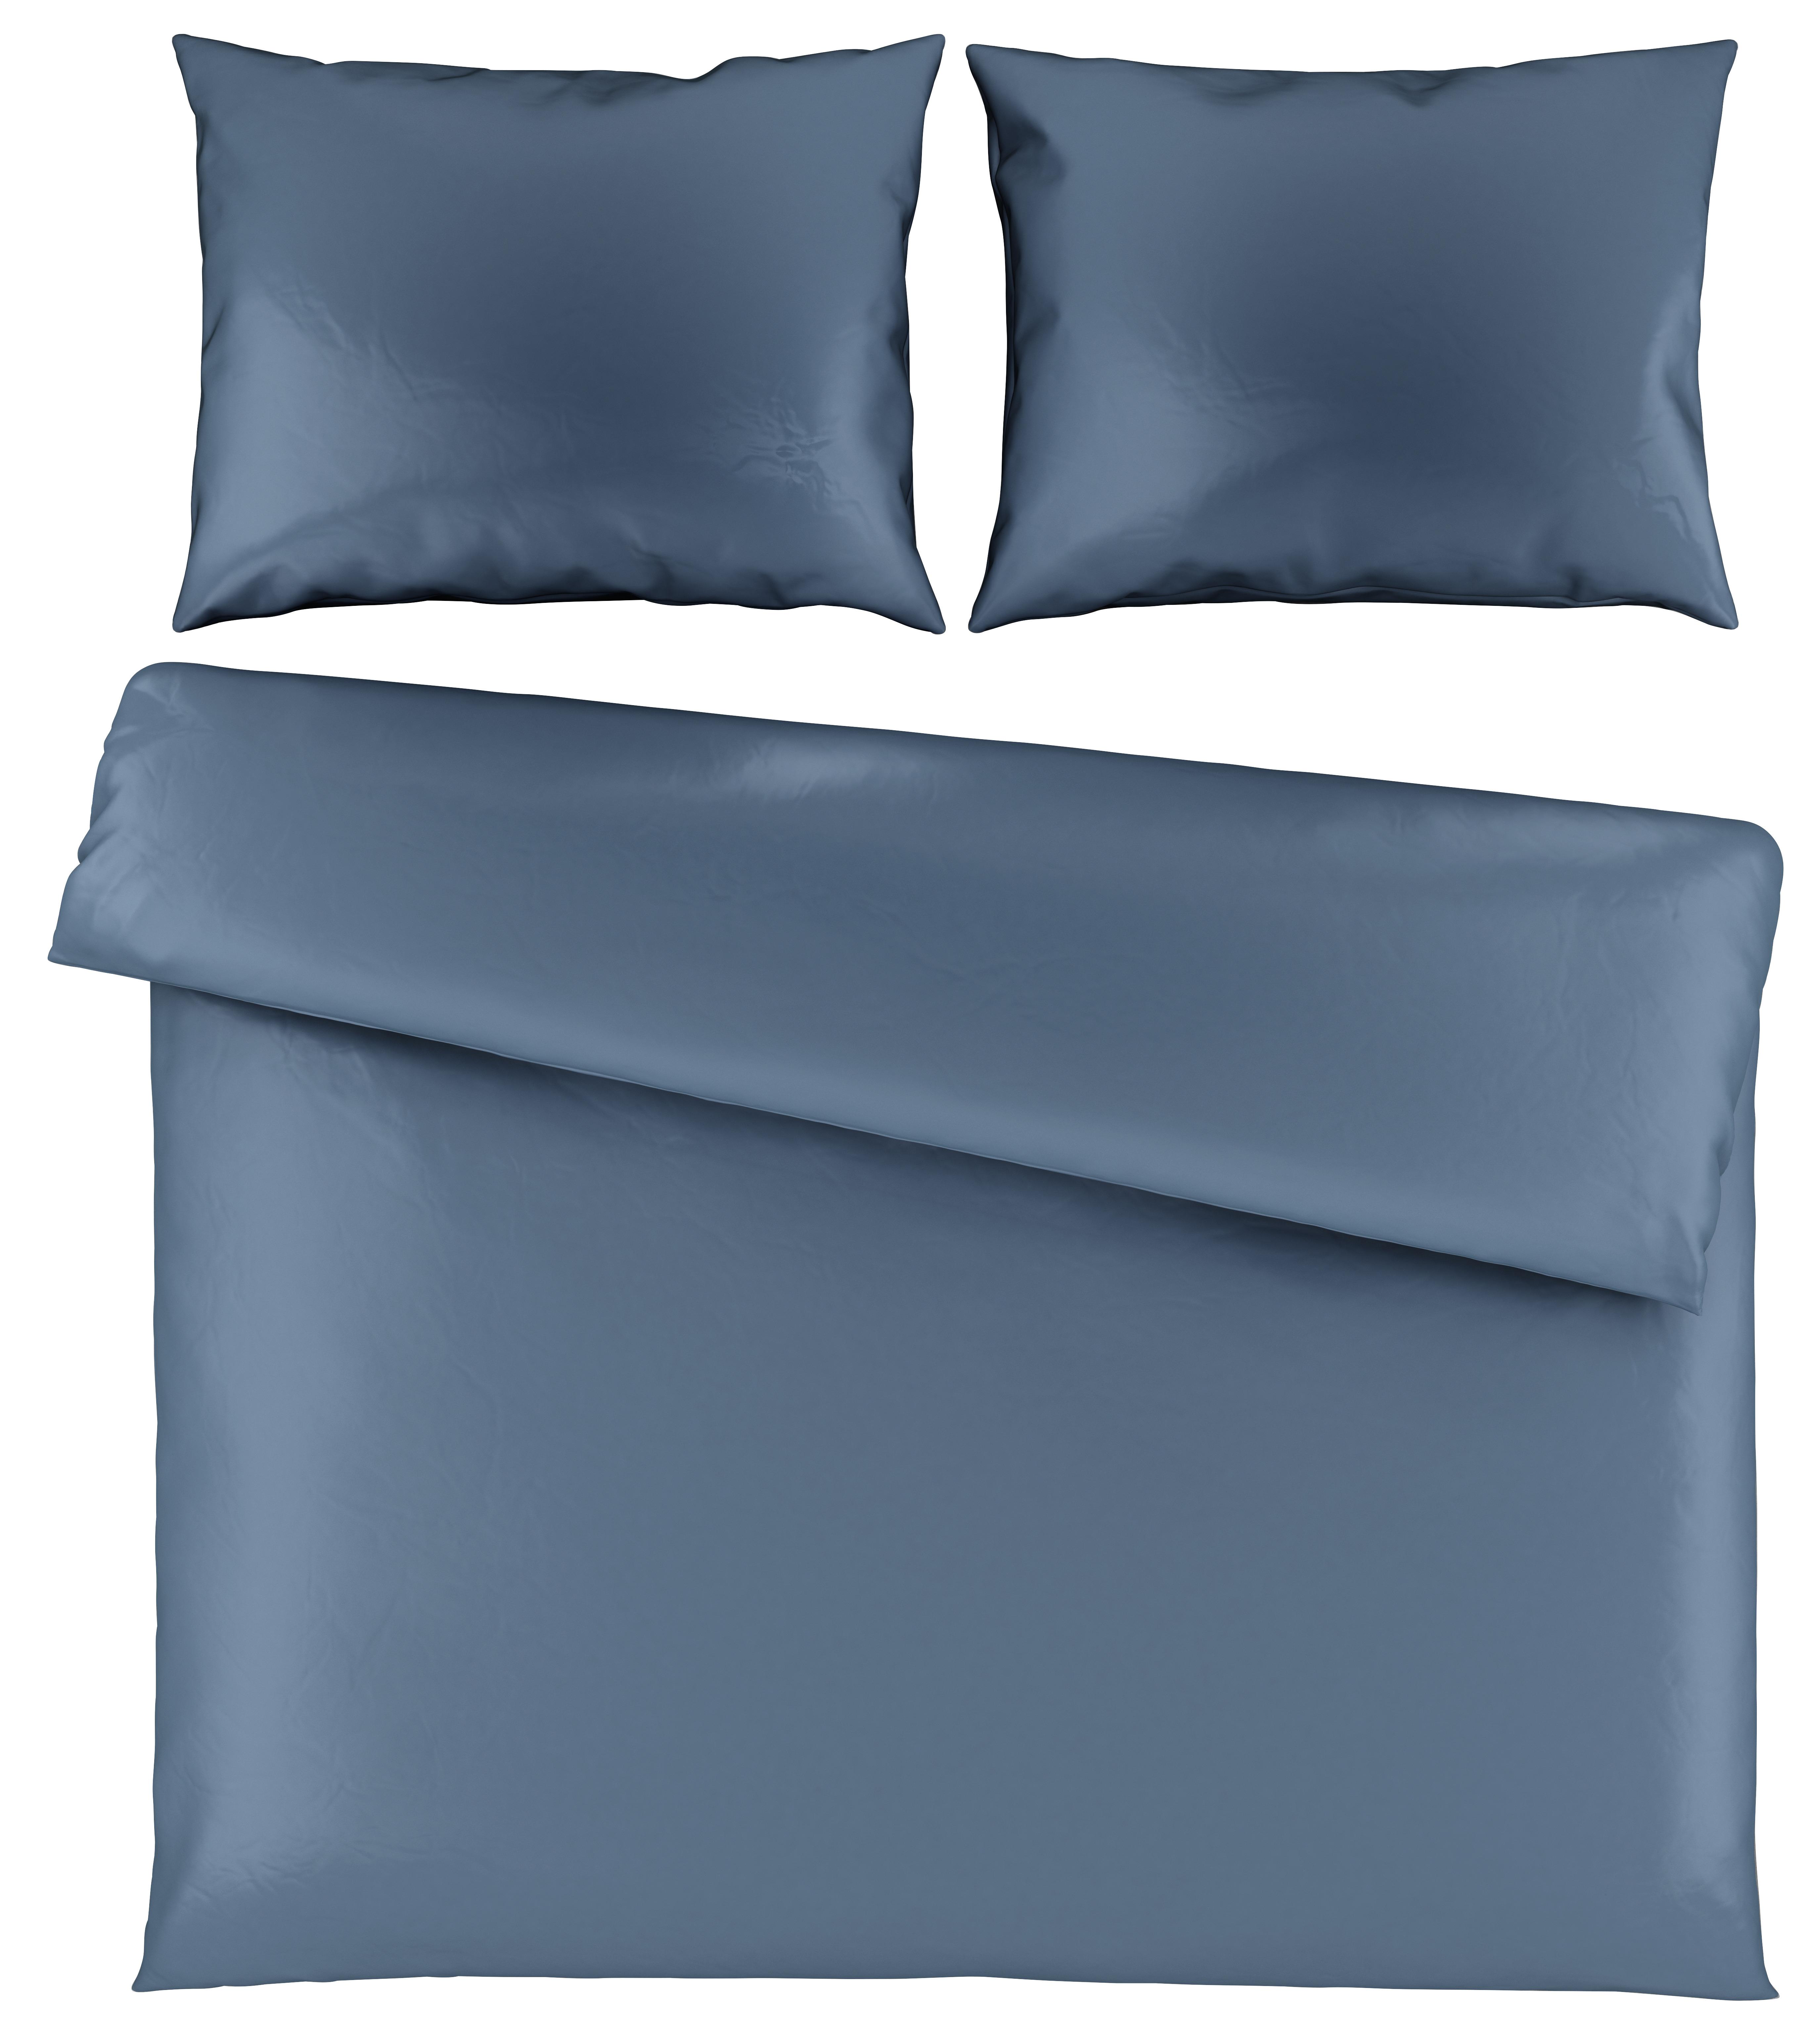 Povlečení Alex Uni Xxl, 200/220cm - modrá, Moderní, textil (200/220cm) - Premium Living